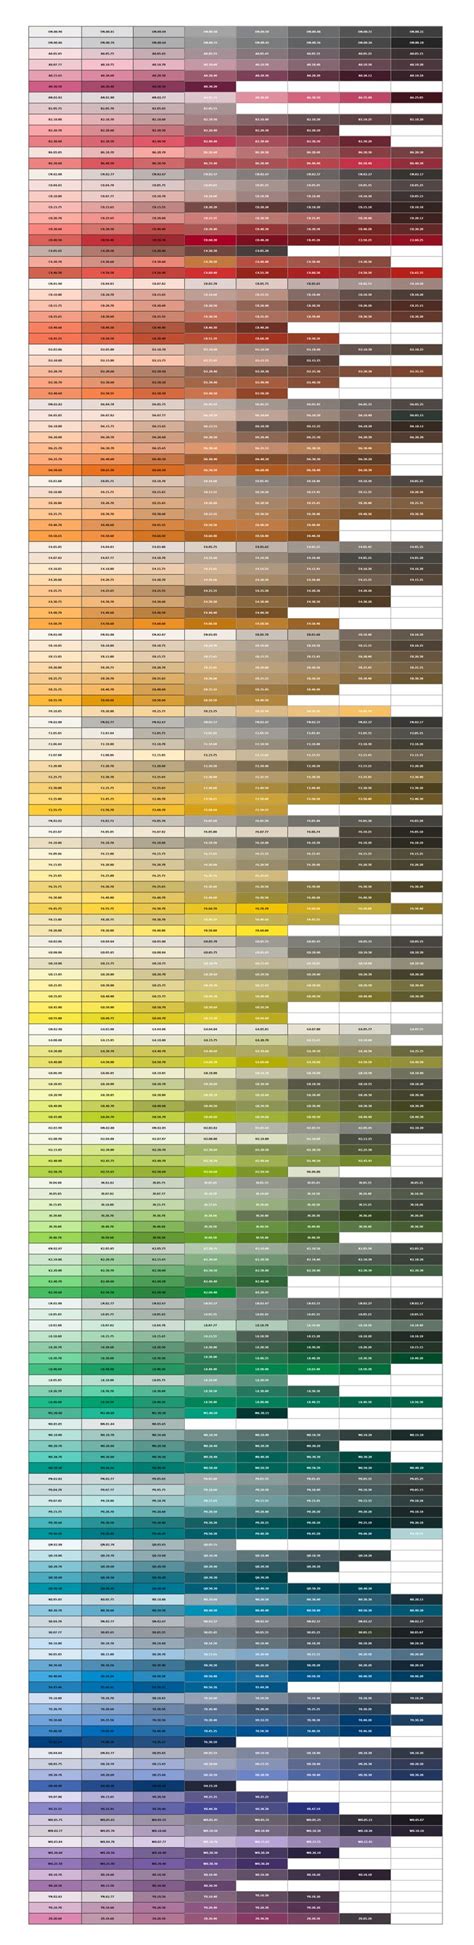 SIKKENS COLOURS CODES Color Coding Behaviour Chart House Colors